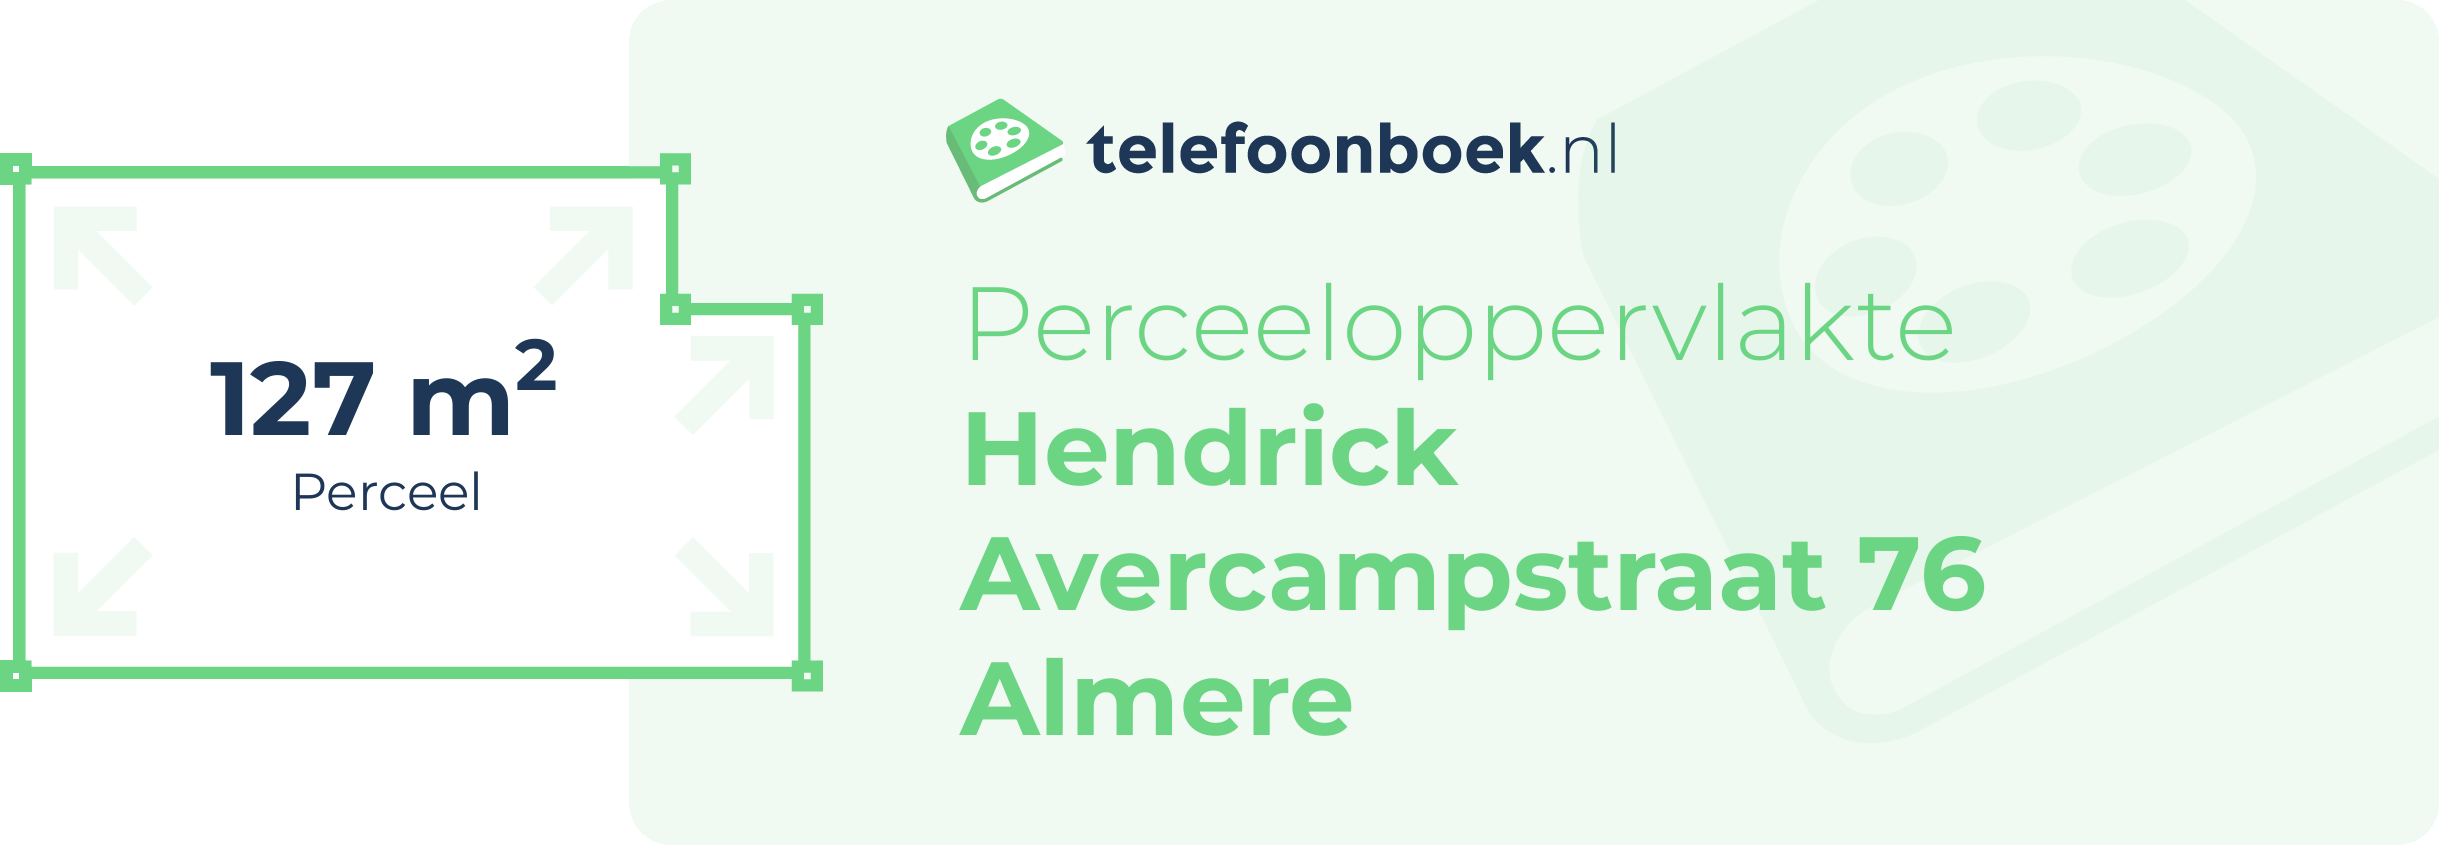 Perceeloppervlakte Hendrick Avercampstraat 76 Almere